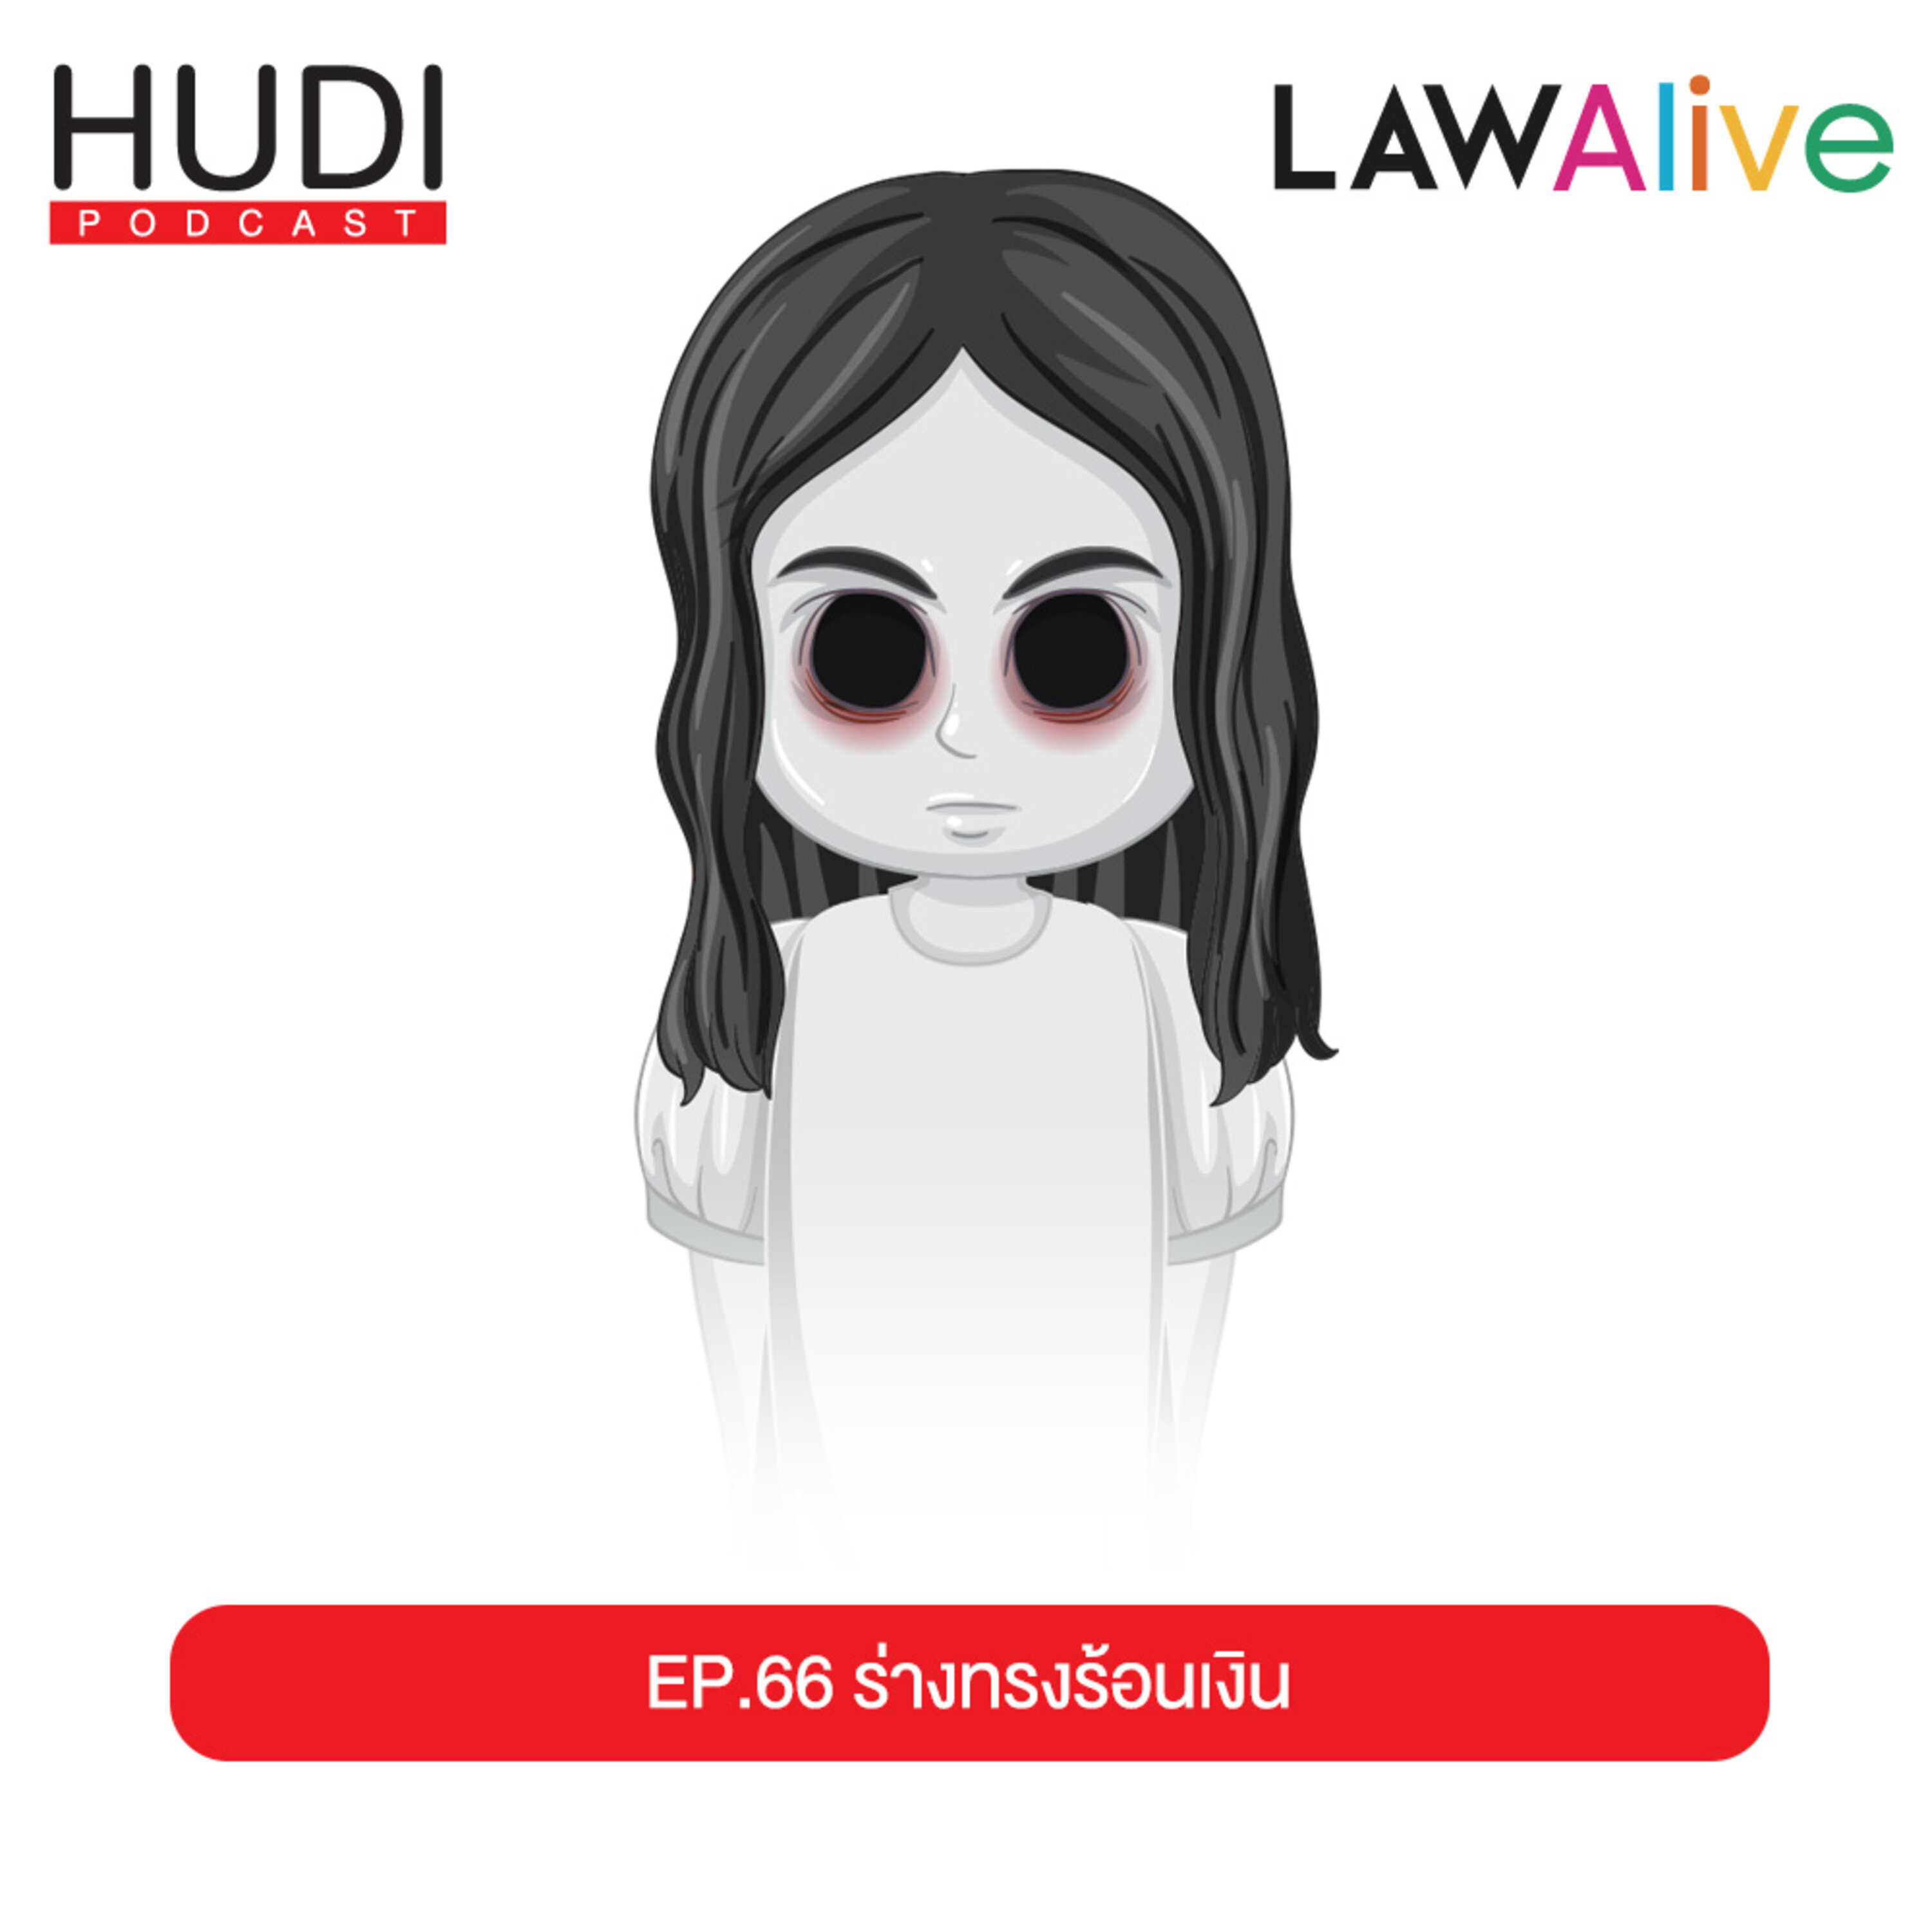 ร่างทรงหลอกลวง ร้อนเงิน HUDI Podcast: Law Alive Ep.66